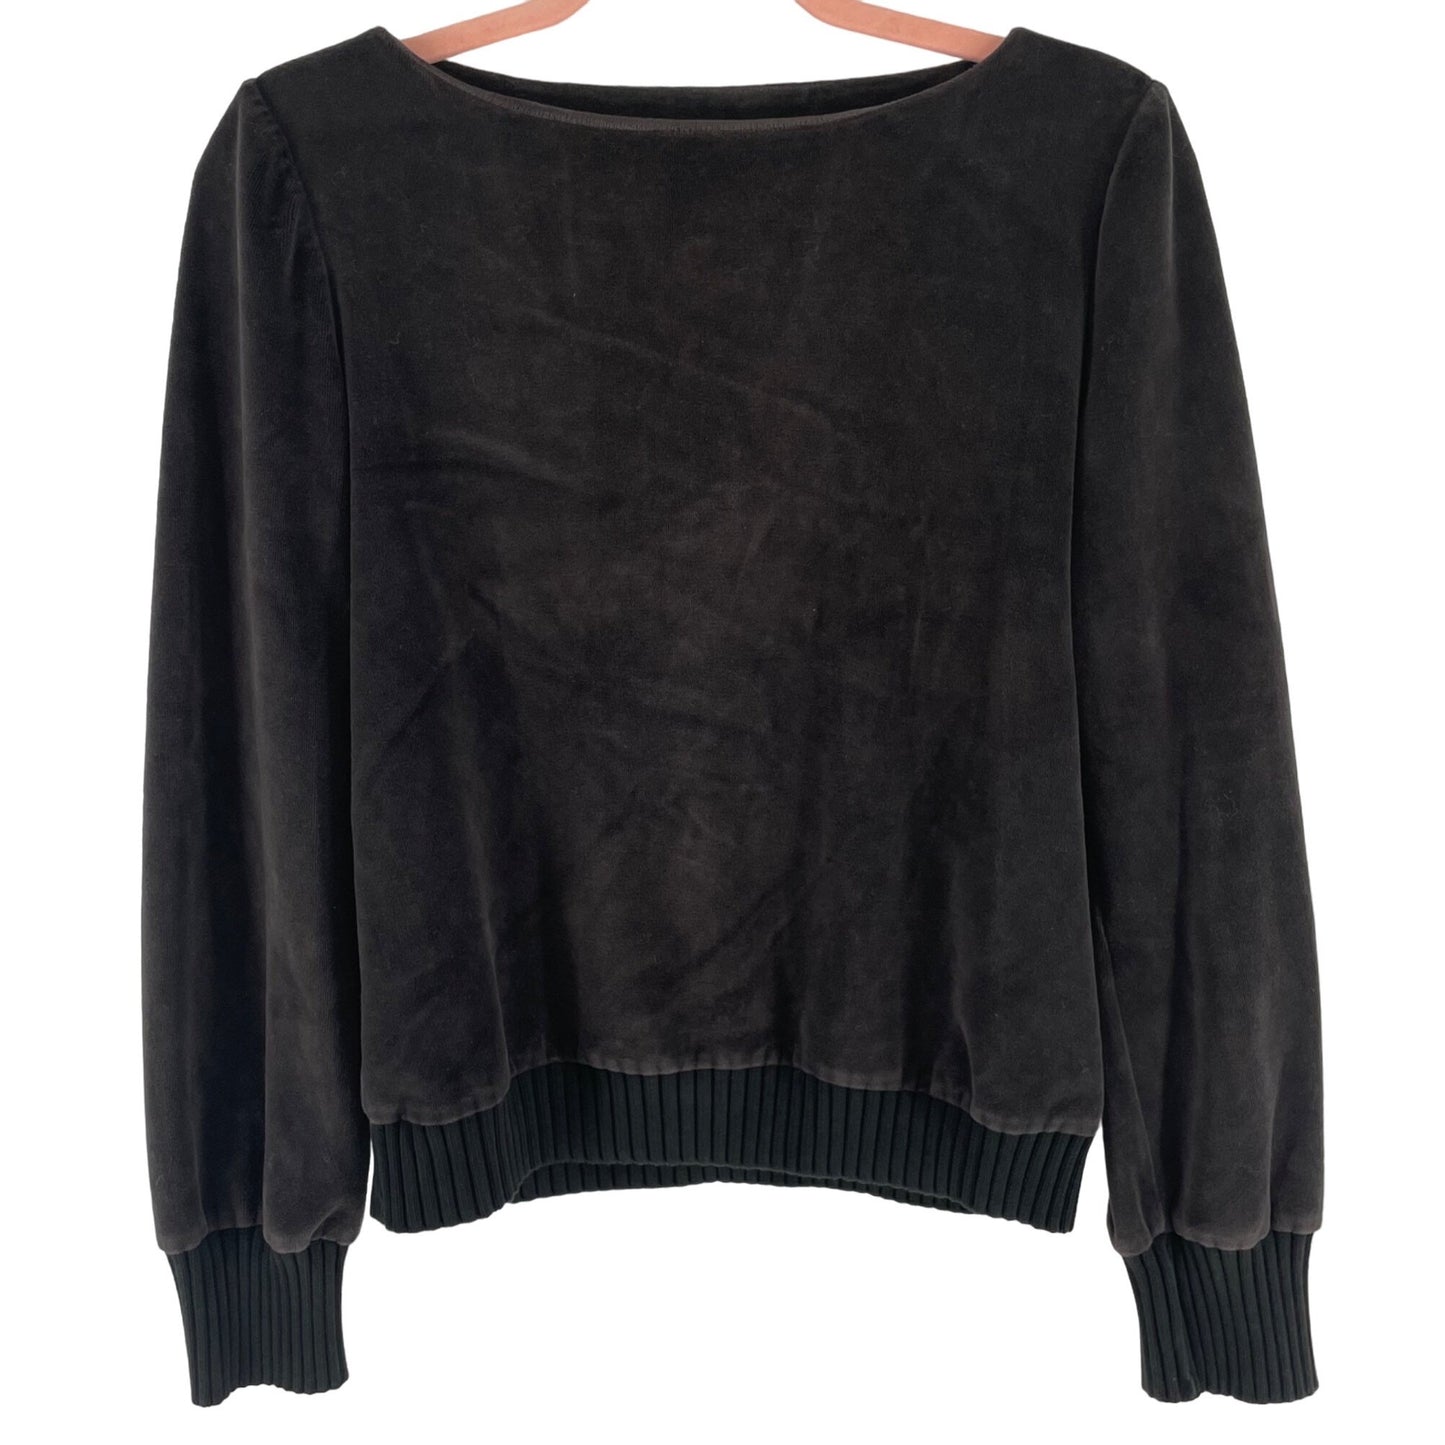 Reiss Women's Size Medium Dark Grey Velour/Velvet Sweater